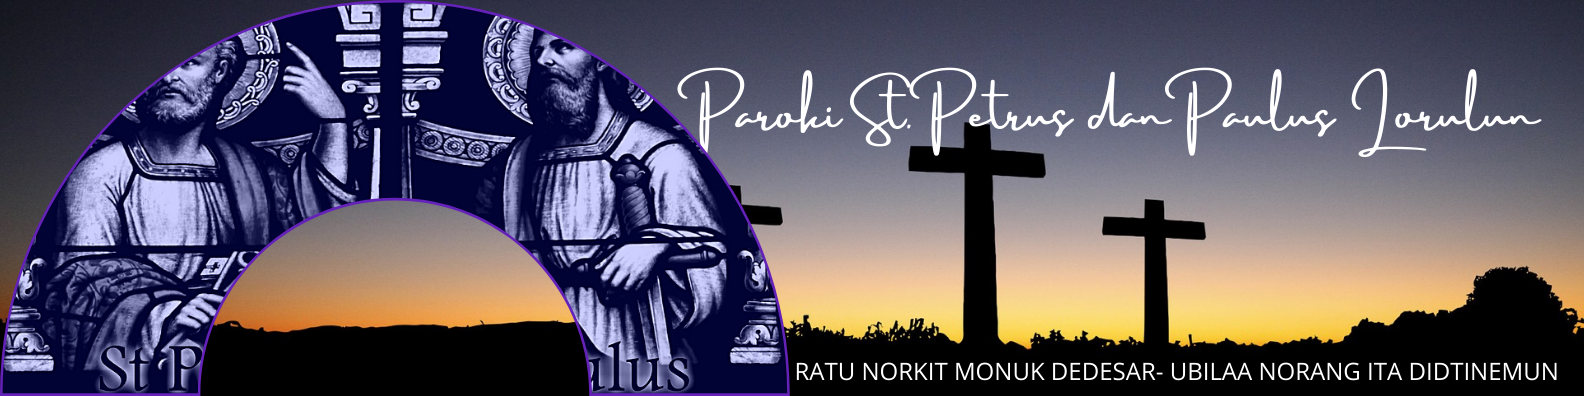 PAROKI ST. PETRUS PAULUS LORULUN R